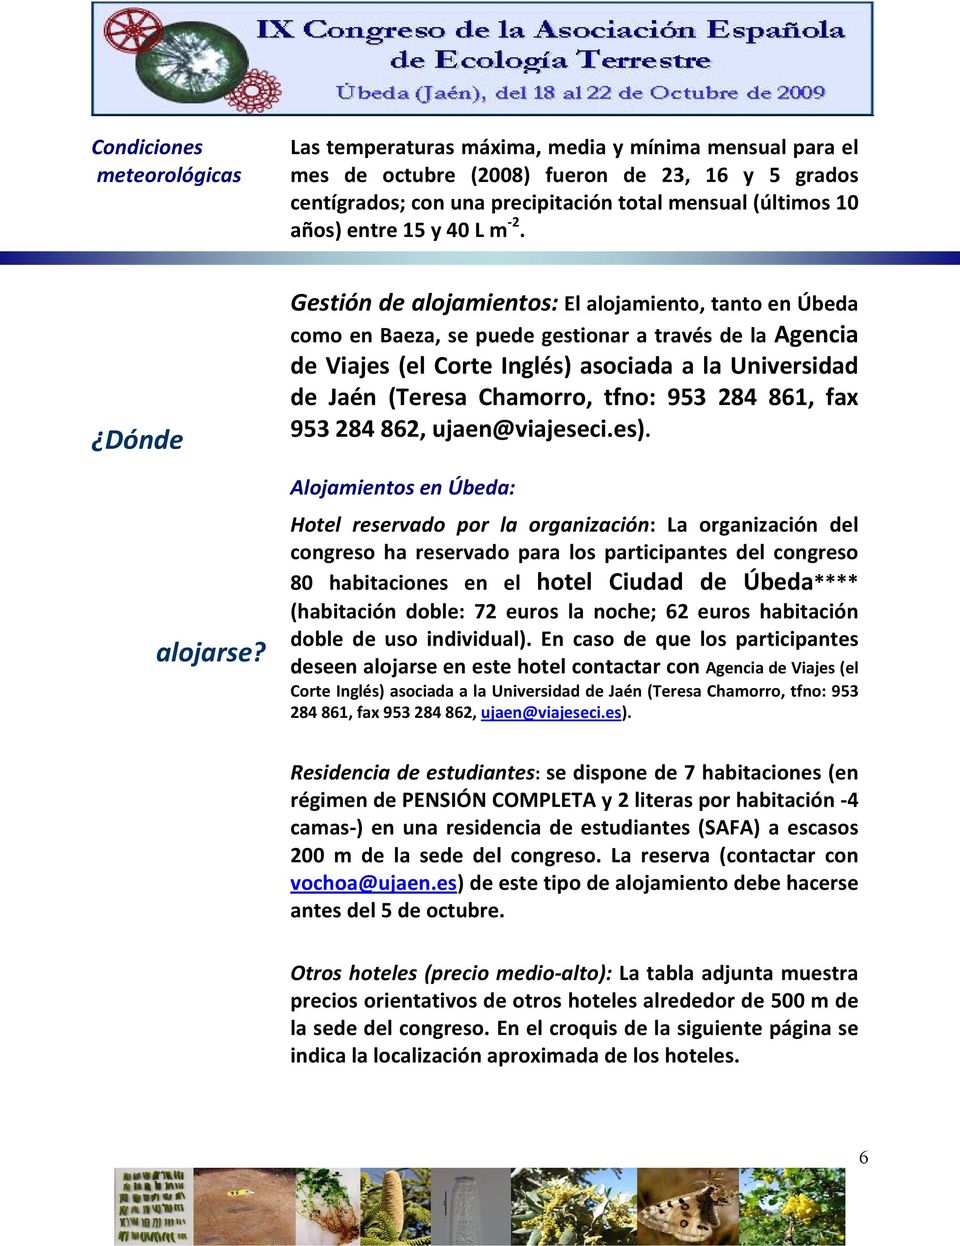 Gestión de alojamientos: El alojamiento, tanto en Úbeda como en Baeza, se puede gestionar a través de la Agencia de Viajes (el Corte Inglés) asociada a la Universidad de Jaén (Teresa Chamorro, tfno: